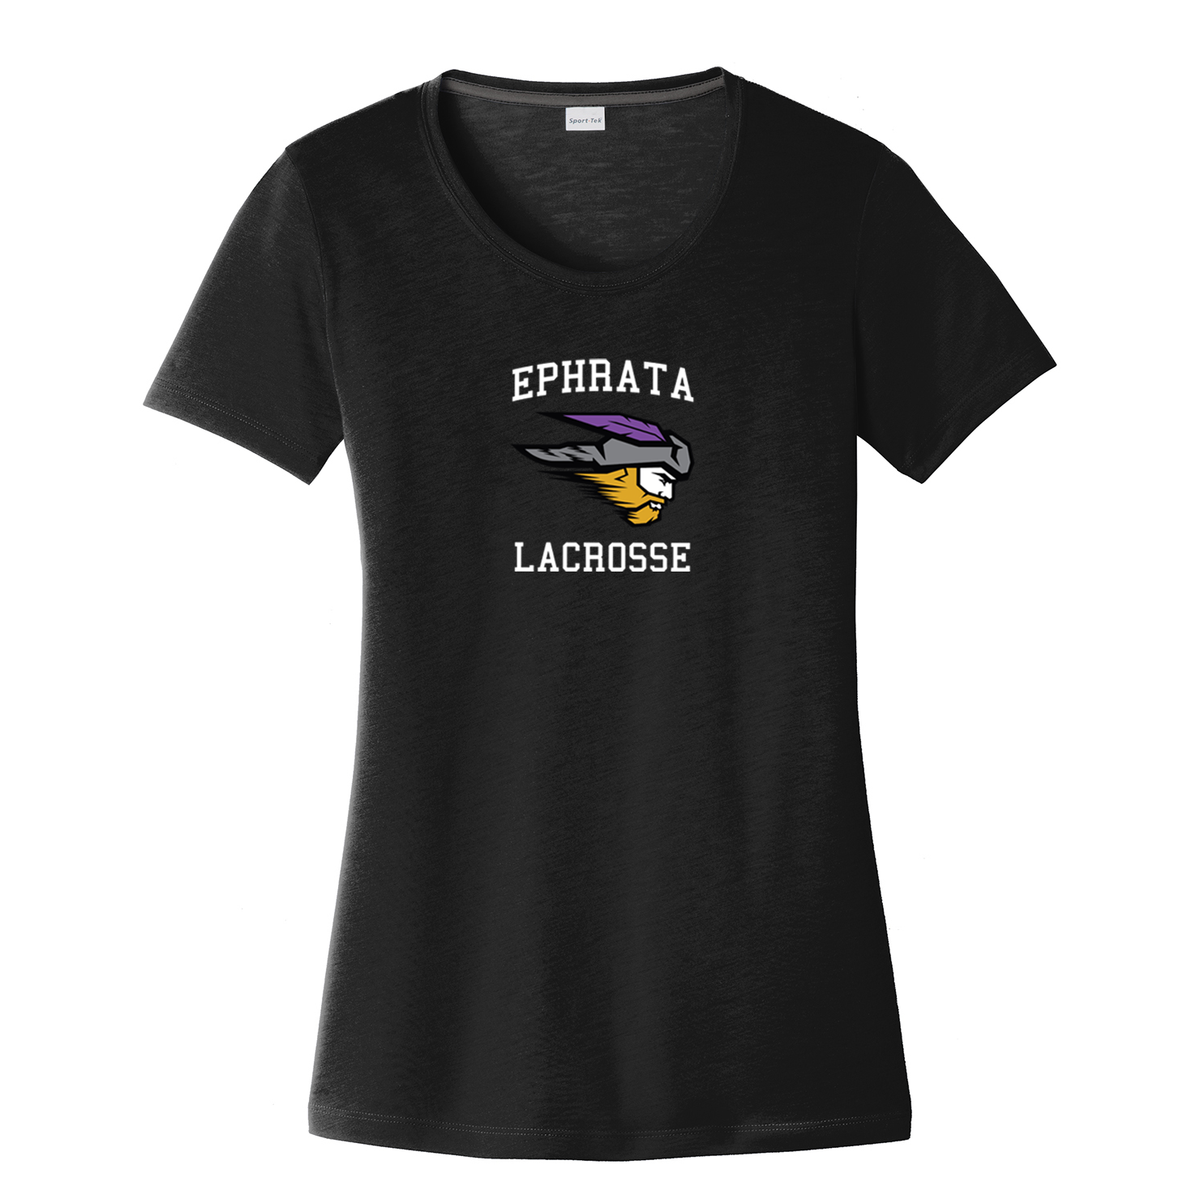 Ephrata Lacrosse Women's CottonTouch Performance T-Shirt